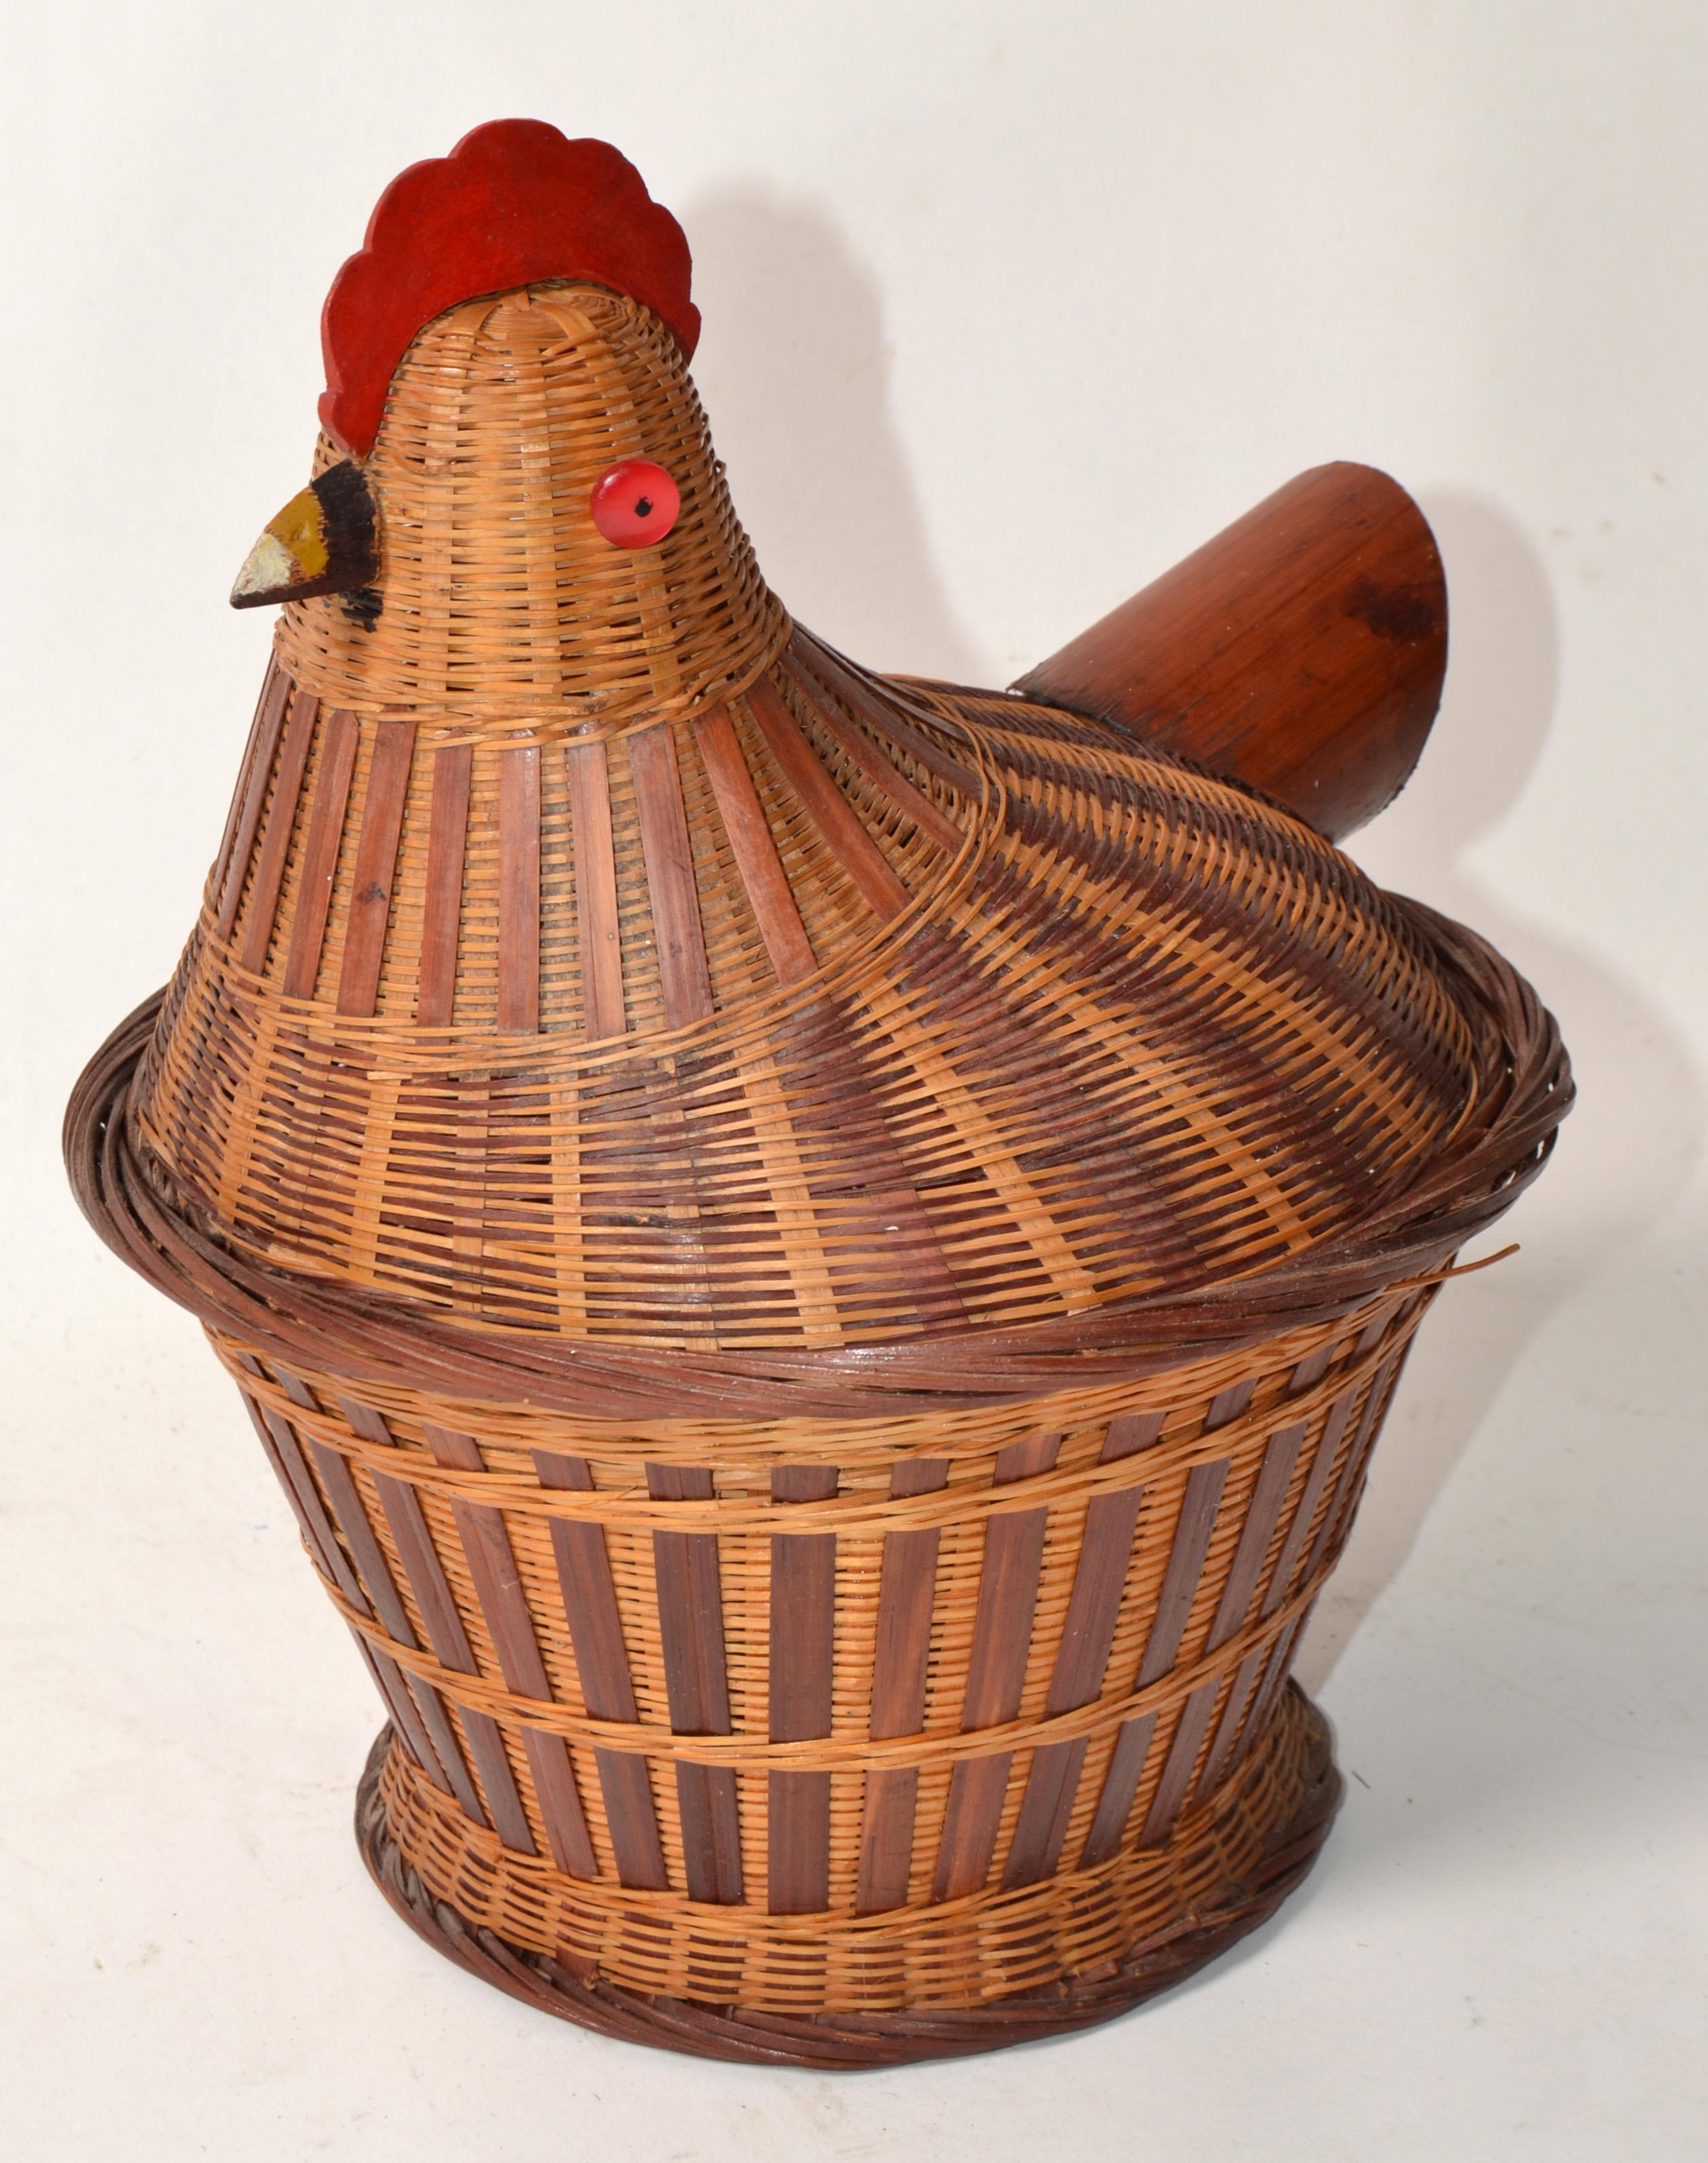 Sammelbare 1960er Jahre Küche Dekoration figuralen Wicker handgeflochtenen Deckel Korb. Henne auf dem Nest sitzend. Henne ist der Deckel mit aufgesetztem rotem Holzkamm und Schnabel und Red Button Eyes, der Schwanz ist aus Bambus. Der Korb selbst